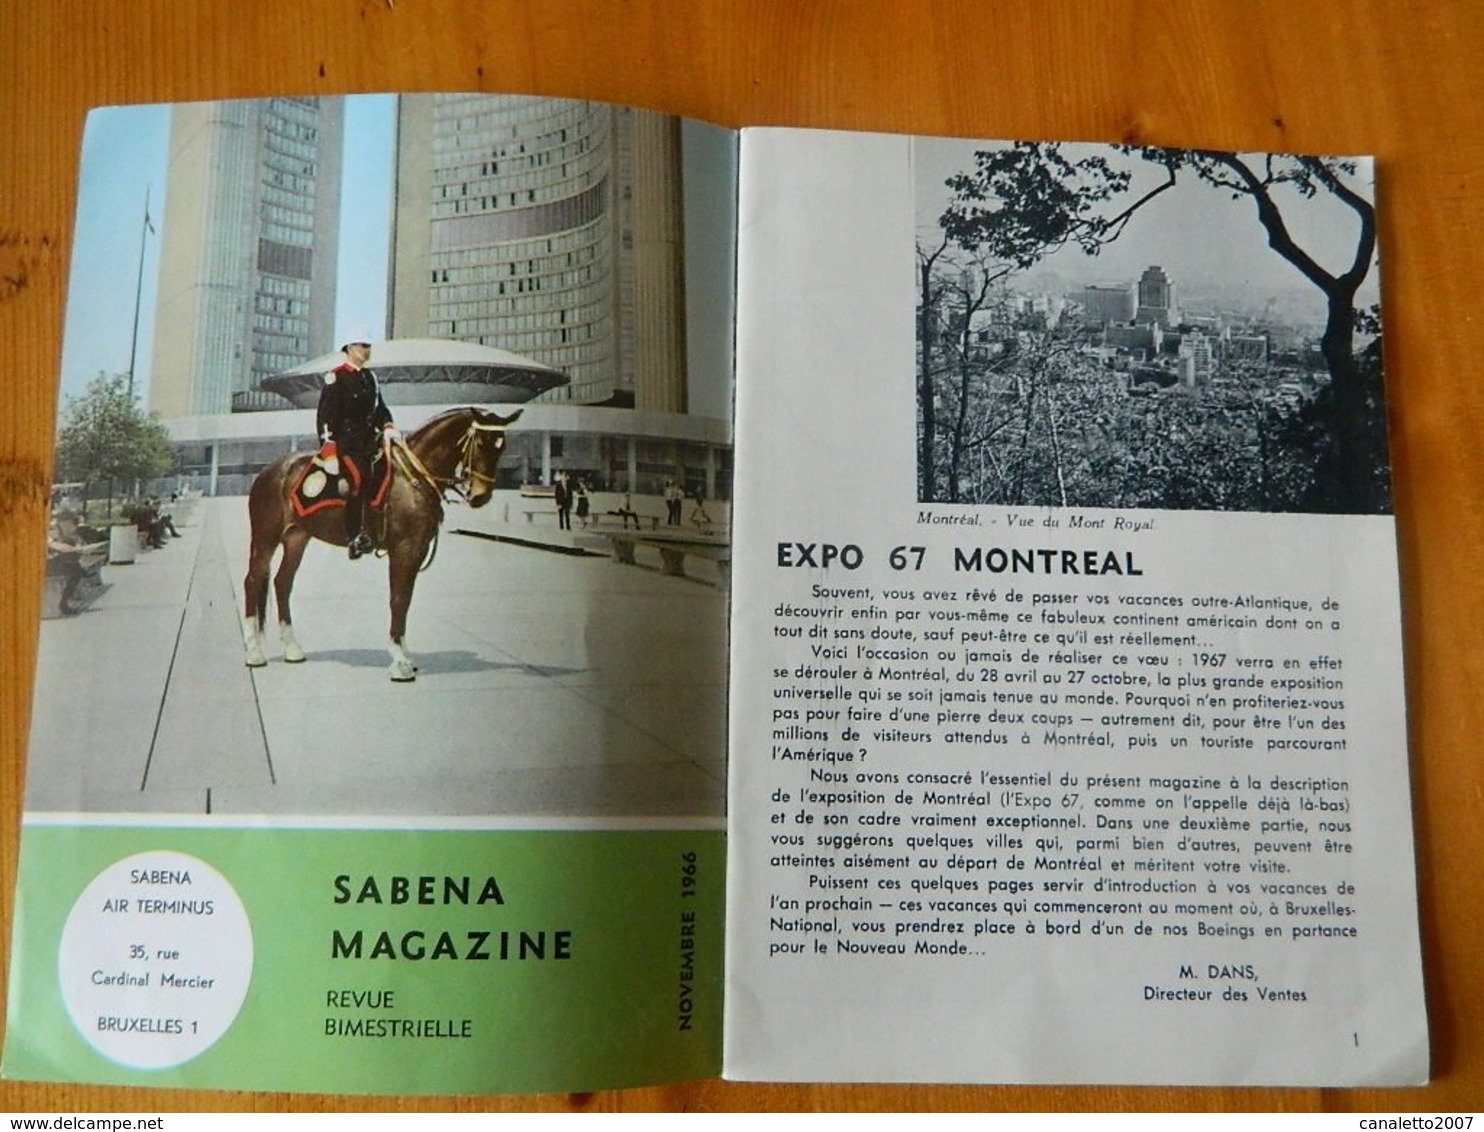 AVIATION +SABENA:MAGAZINE SABENA NOVEMBRE 1966 EXPO 67 MONTREAL -32 PAGES - AeroAirplanes